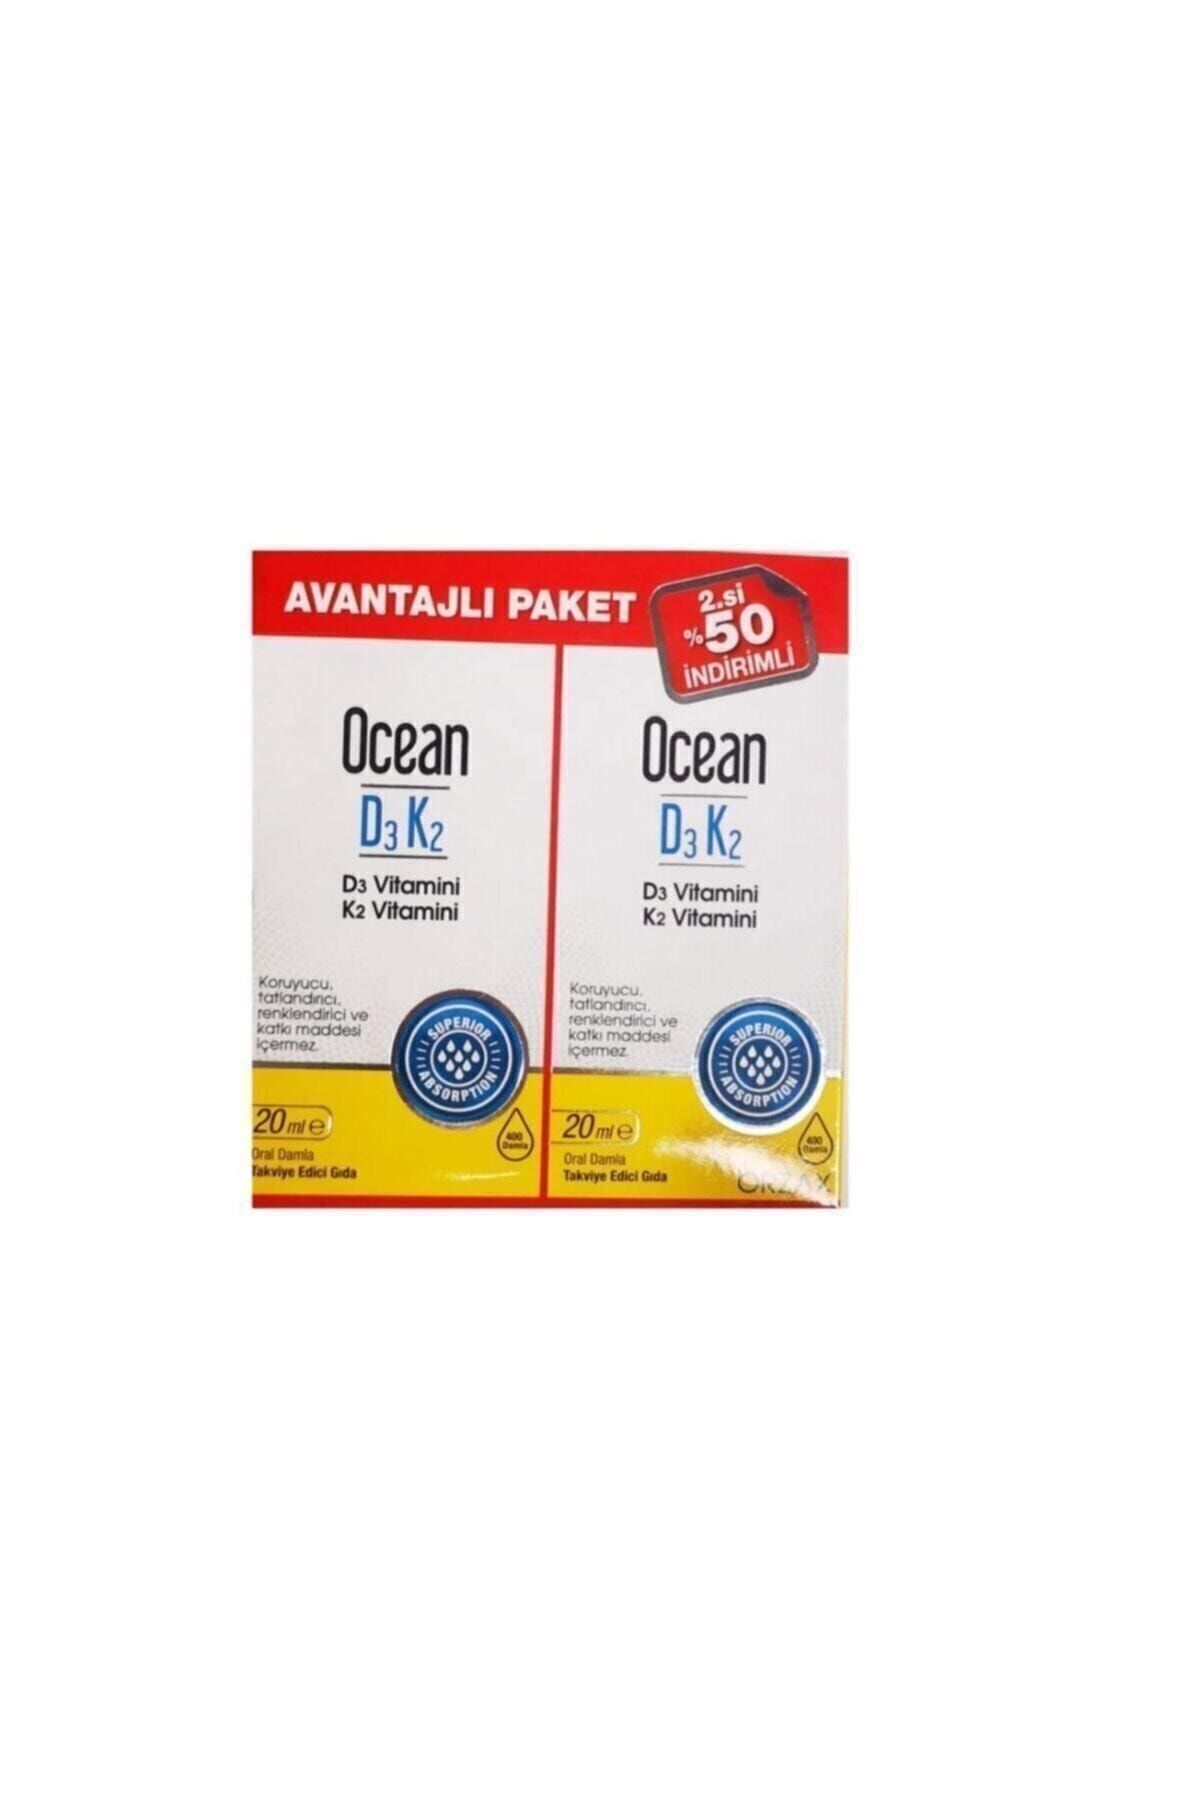 Ocean Ocean Vitamin D3k2 Damla 20 Ml 2 Li Avantaj Paket Fiyati Yorumlari Trendyol